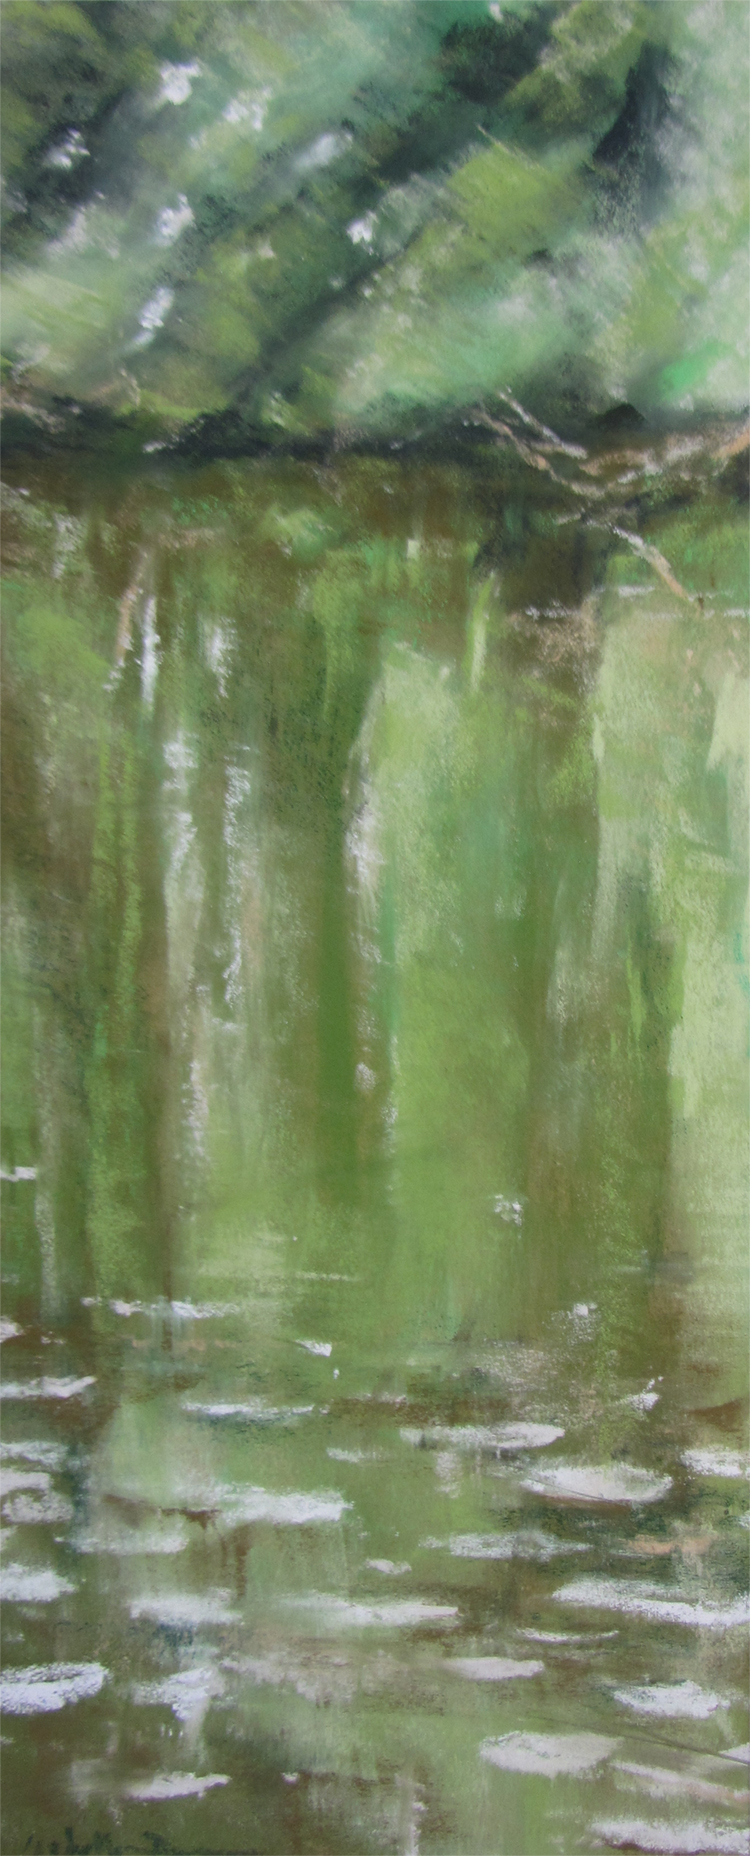 Reflets sur l'étang de Beaulieu - Peinture au pastel sec par l'artiste peintre Isabelle Douzamy - 57x30 cm